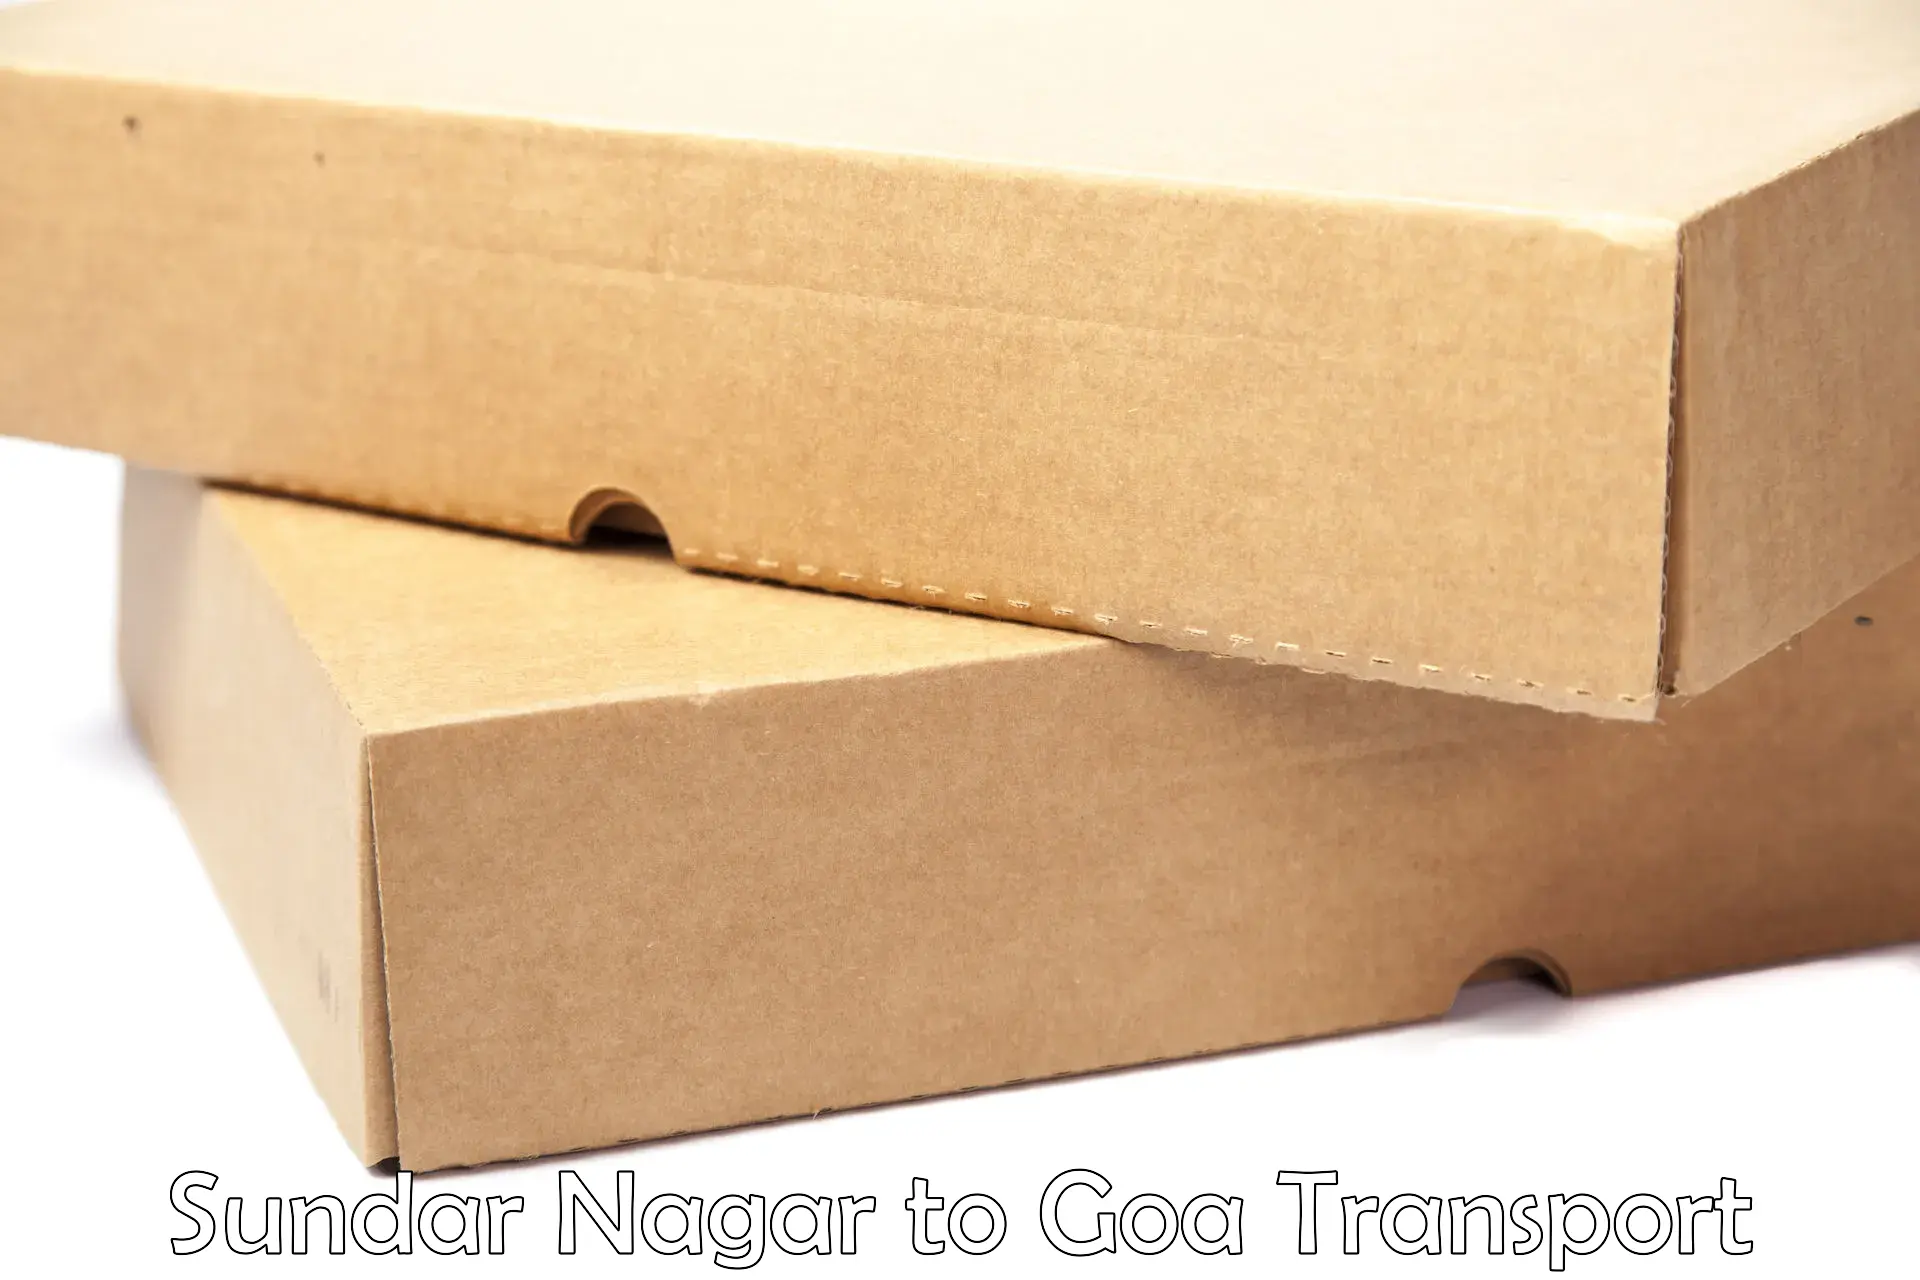 Container transport service Sundar Nagar to Vasco da Gama